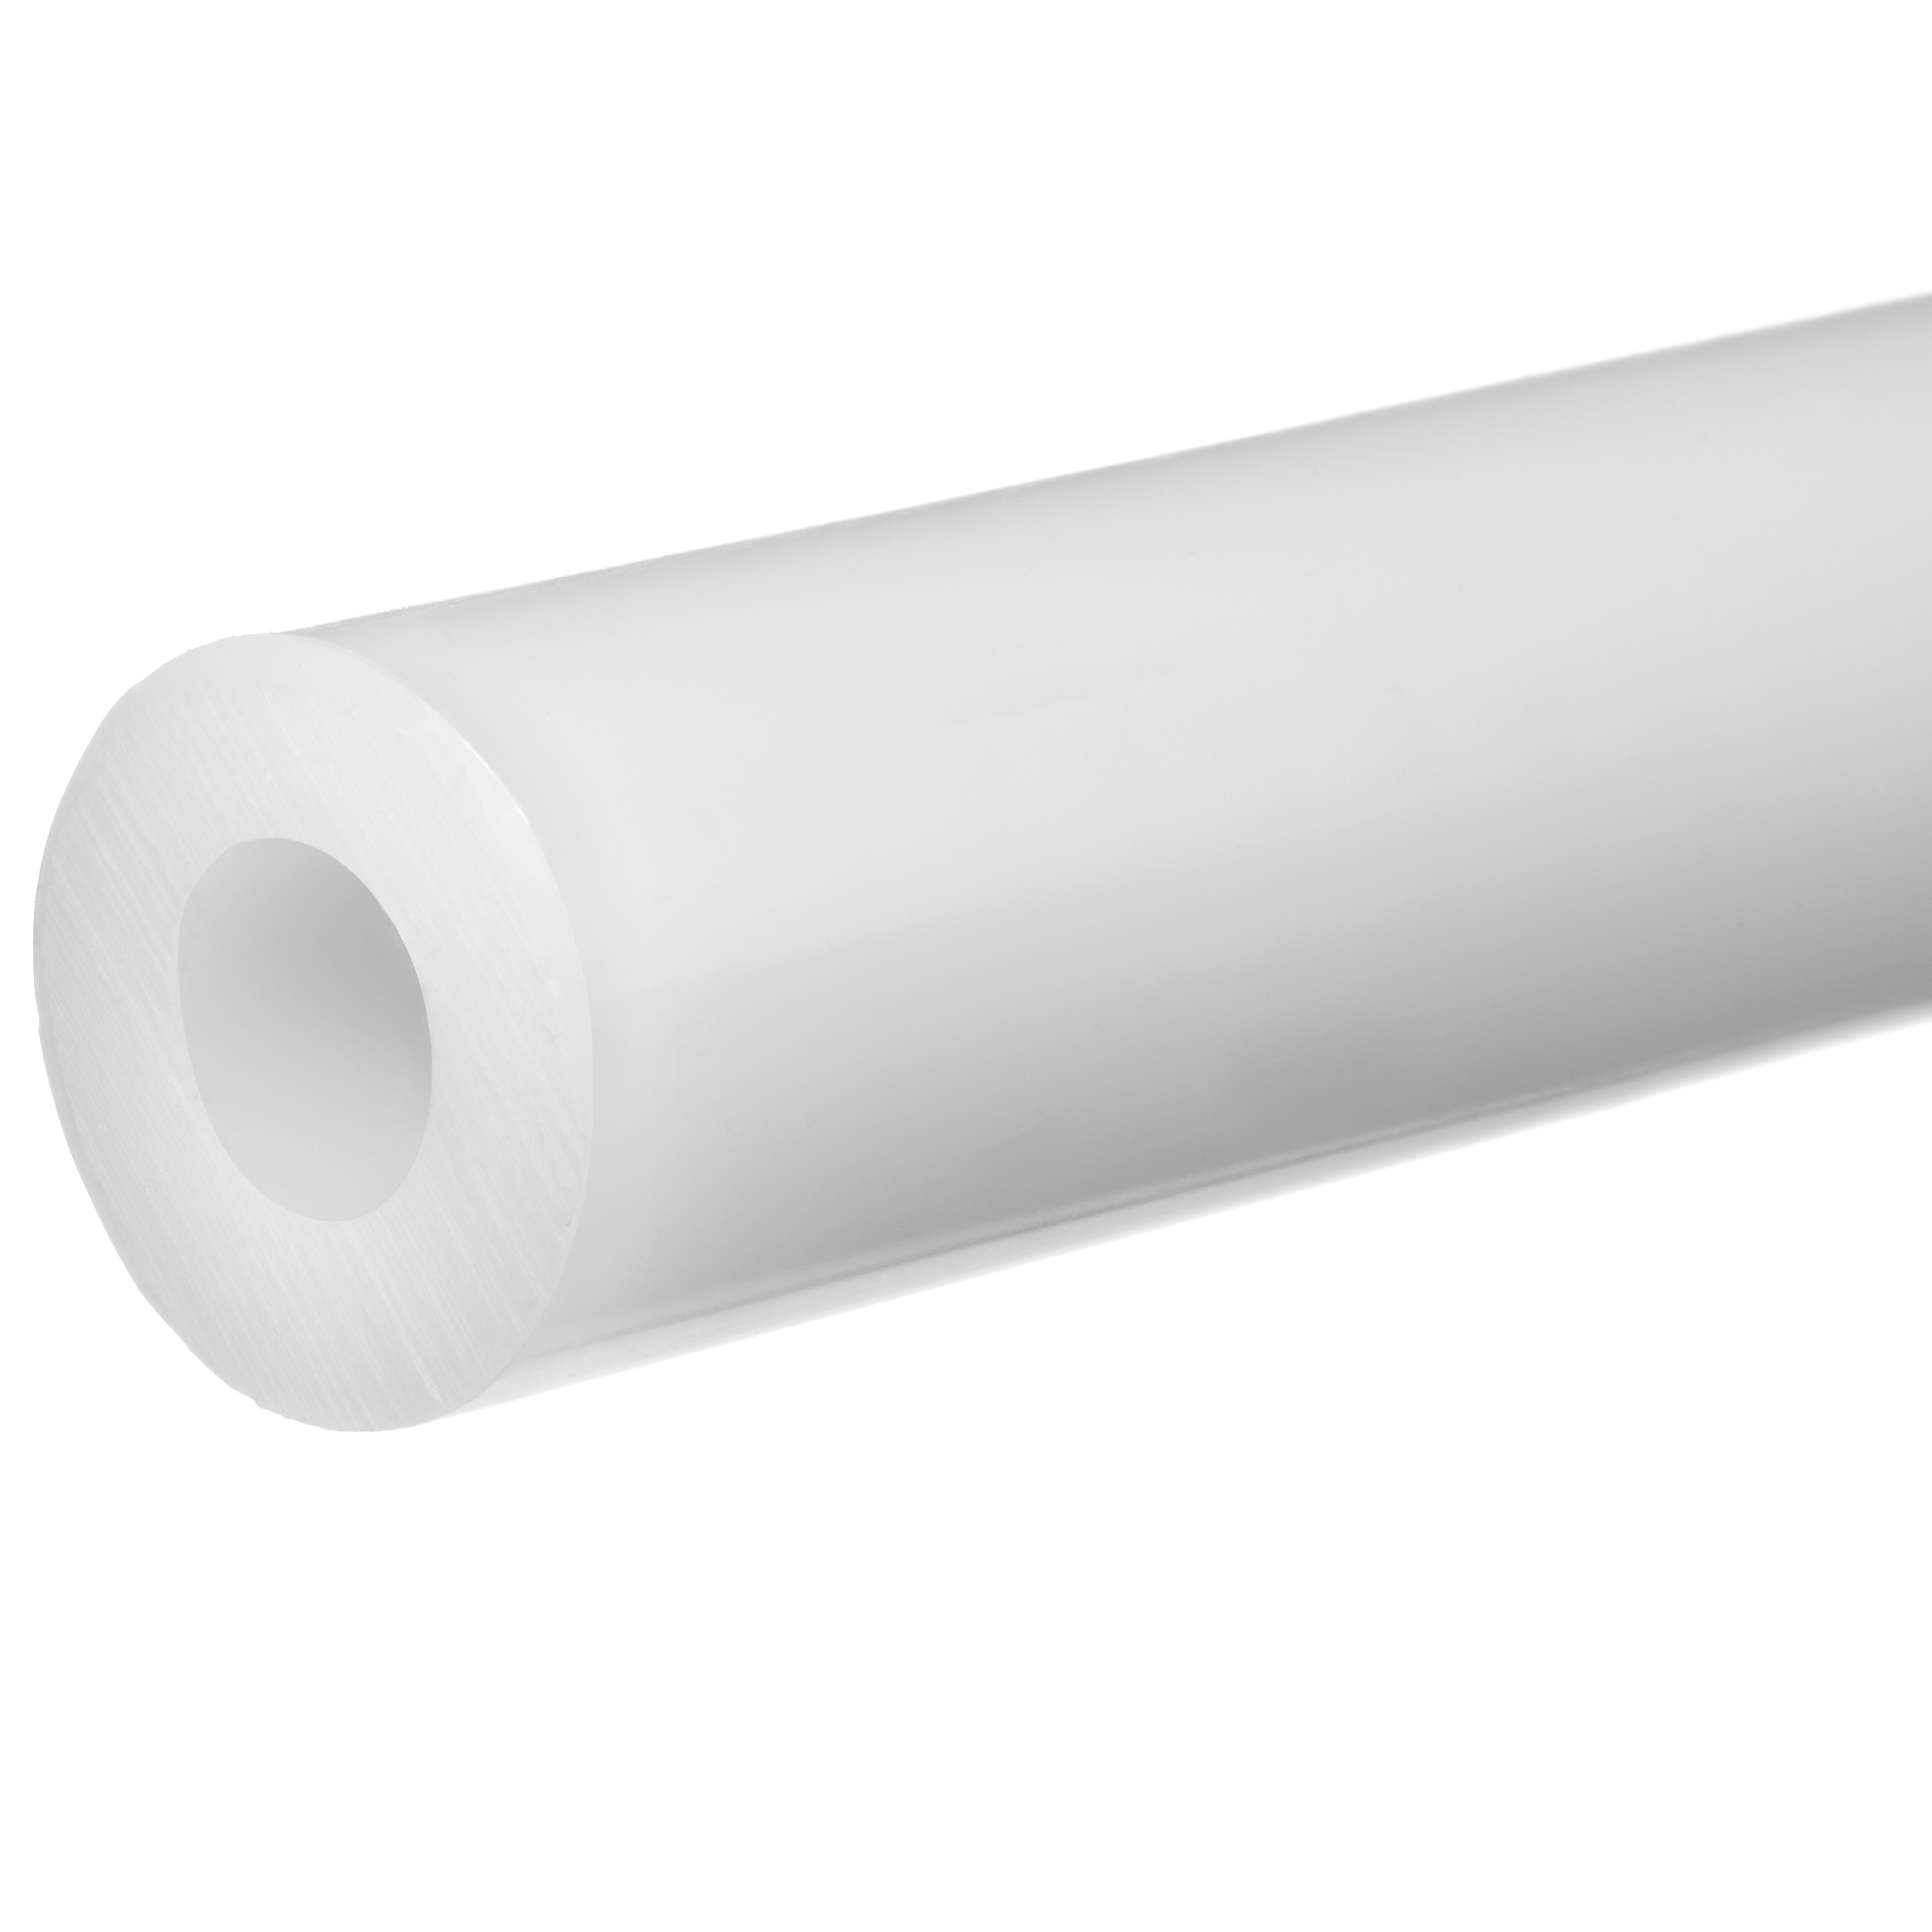 白色聚四氟乙烯塑料管(美國密封)